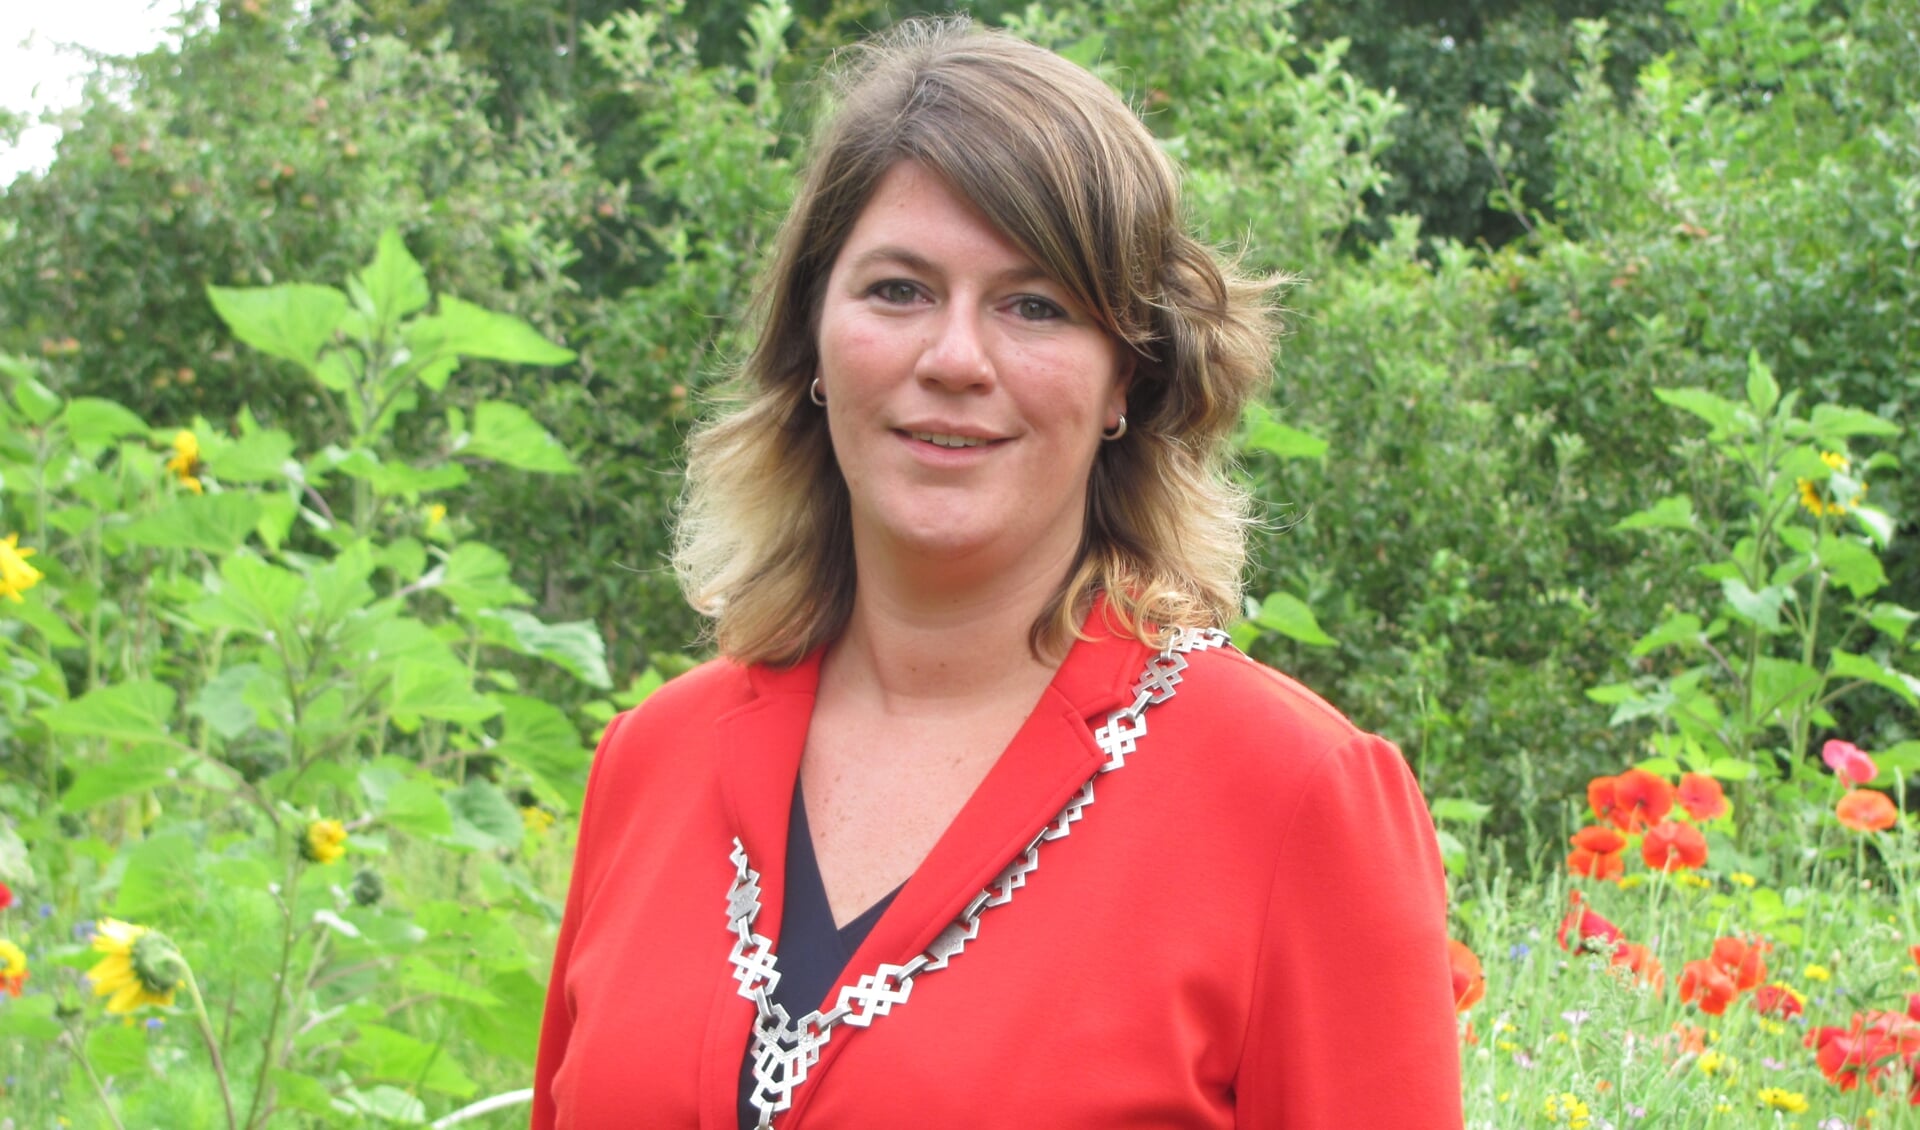 Burgemeester Joyce Vermue popelt om aan de slag te gaan: 'Ik wil vooruit op een manier die past bij Zundert'